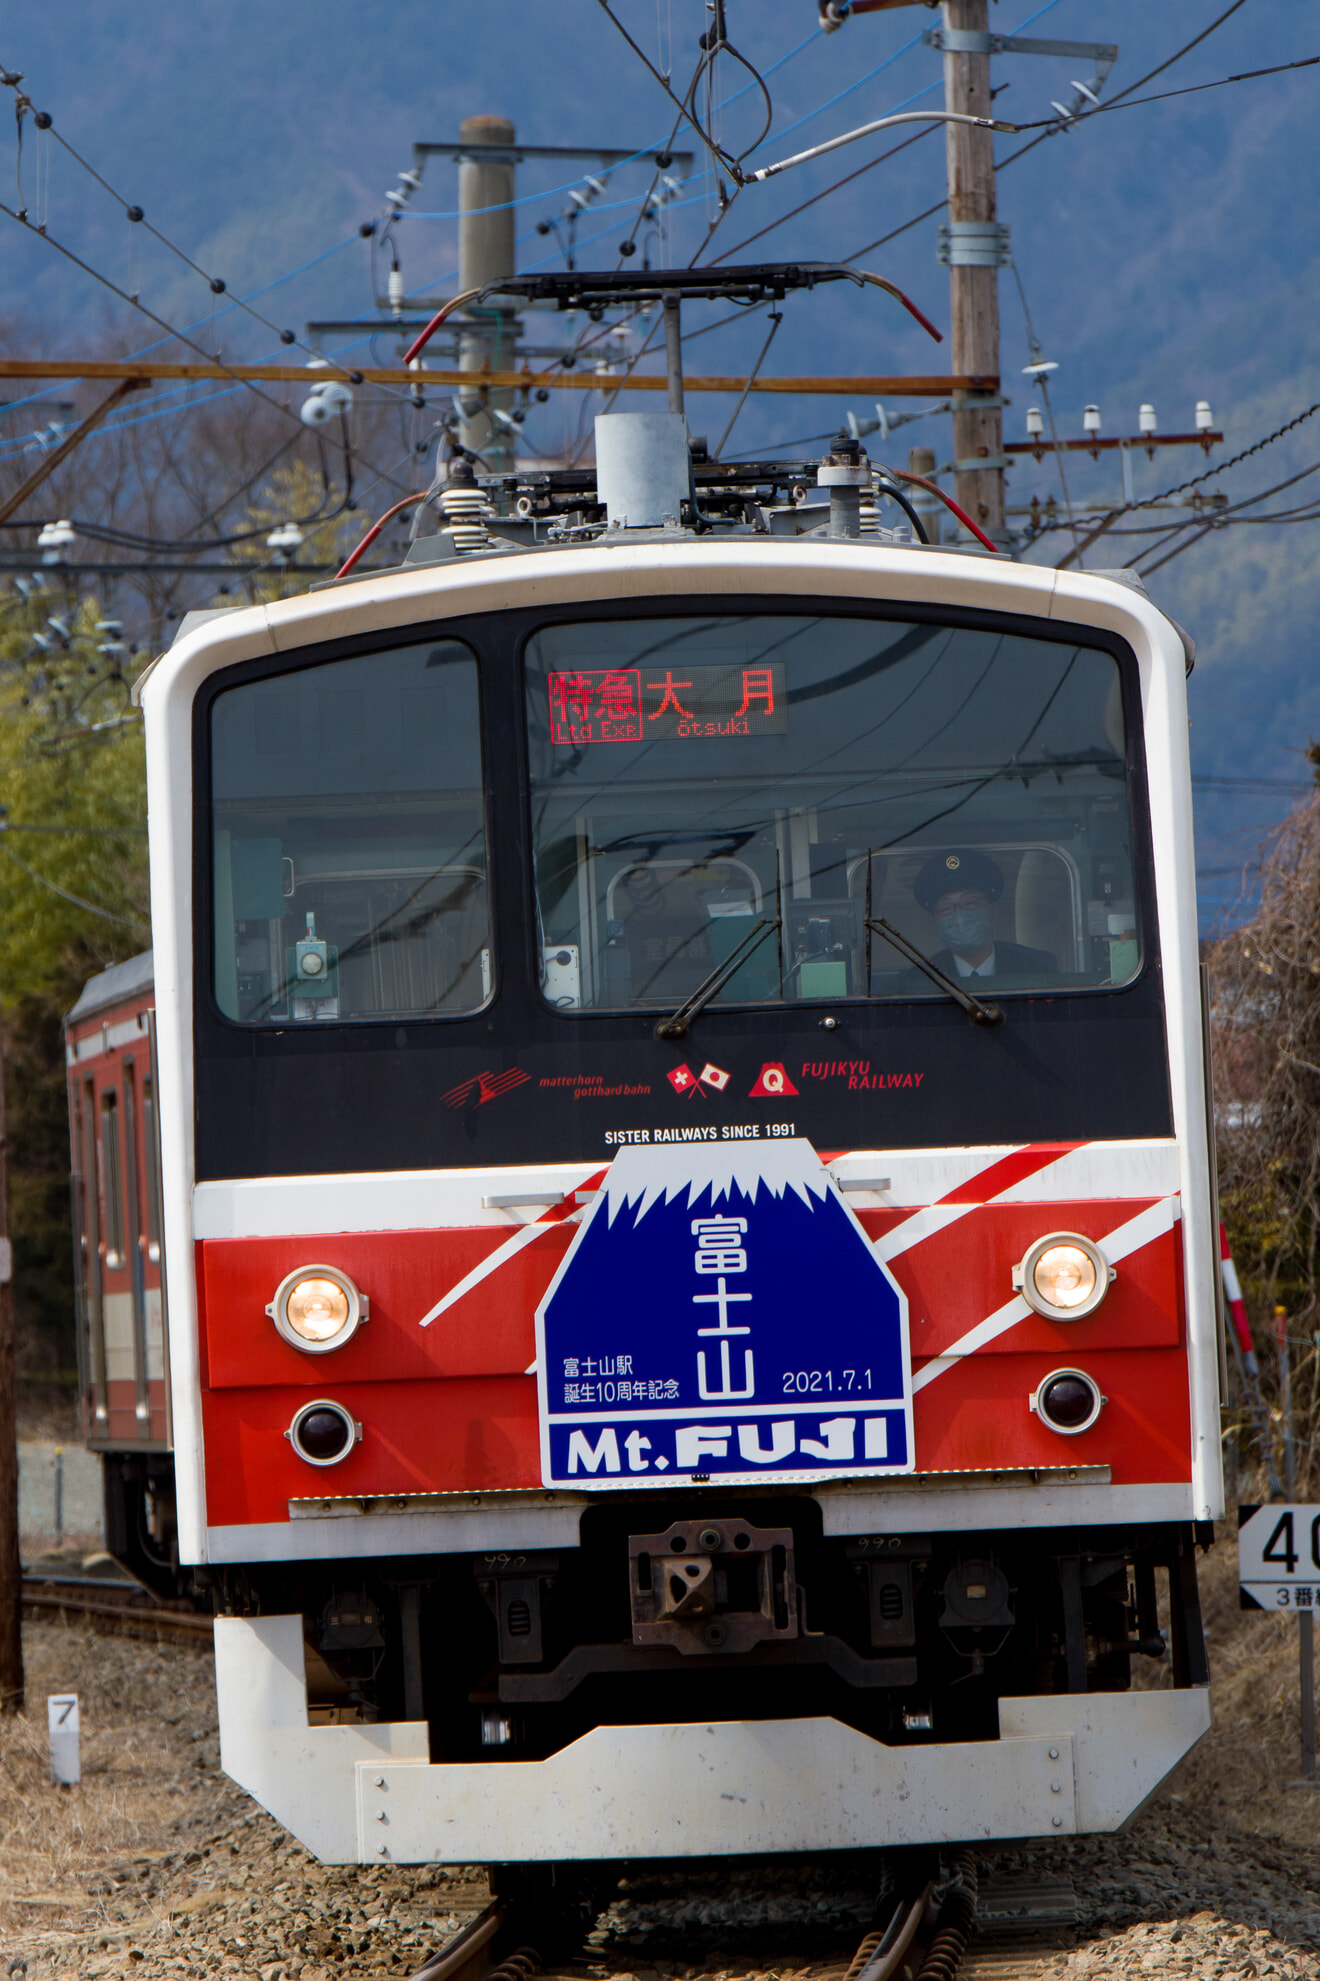 【富士急】6000系6501F(マッターホルン号)による富士山ビュー特急代走の拡大写真